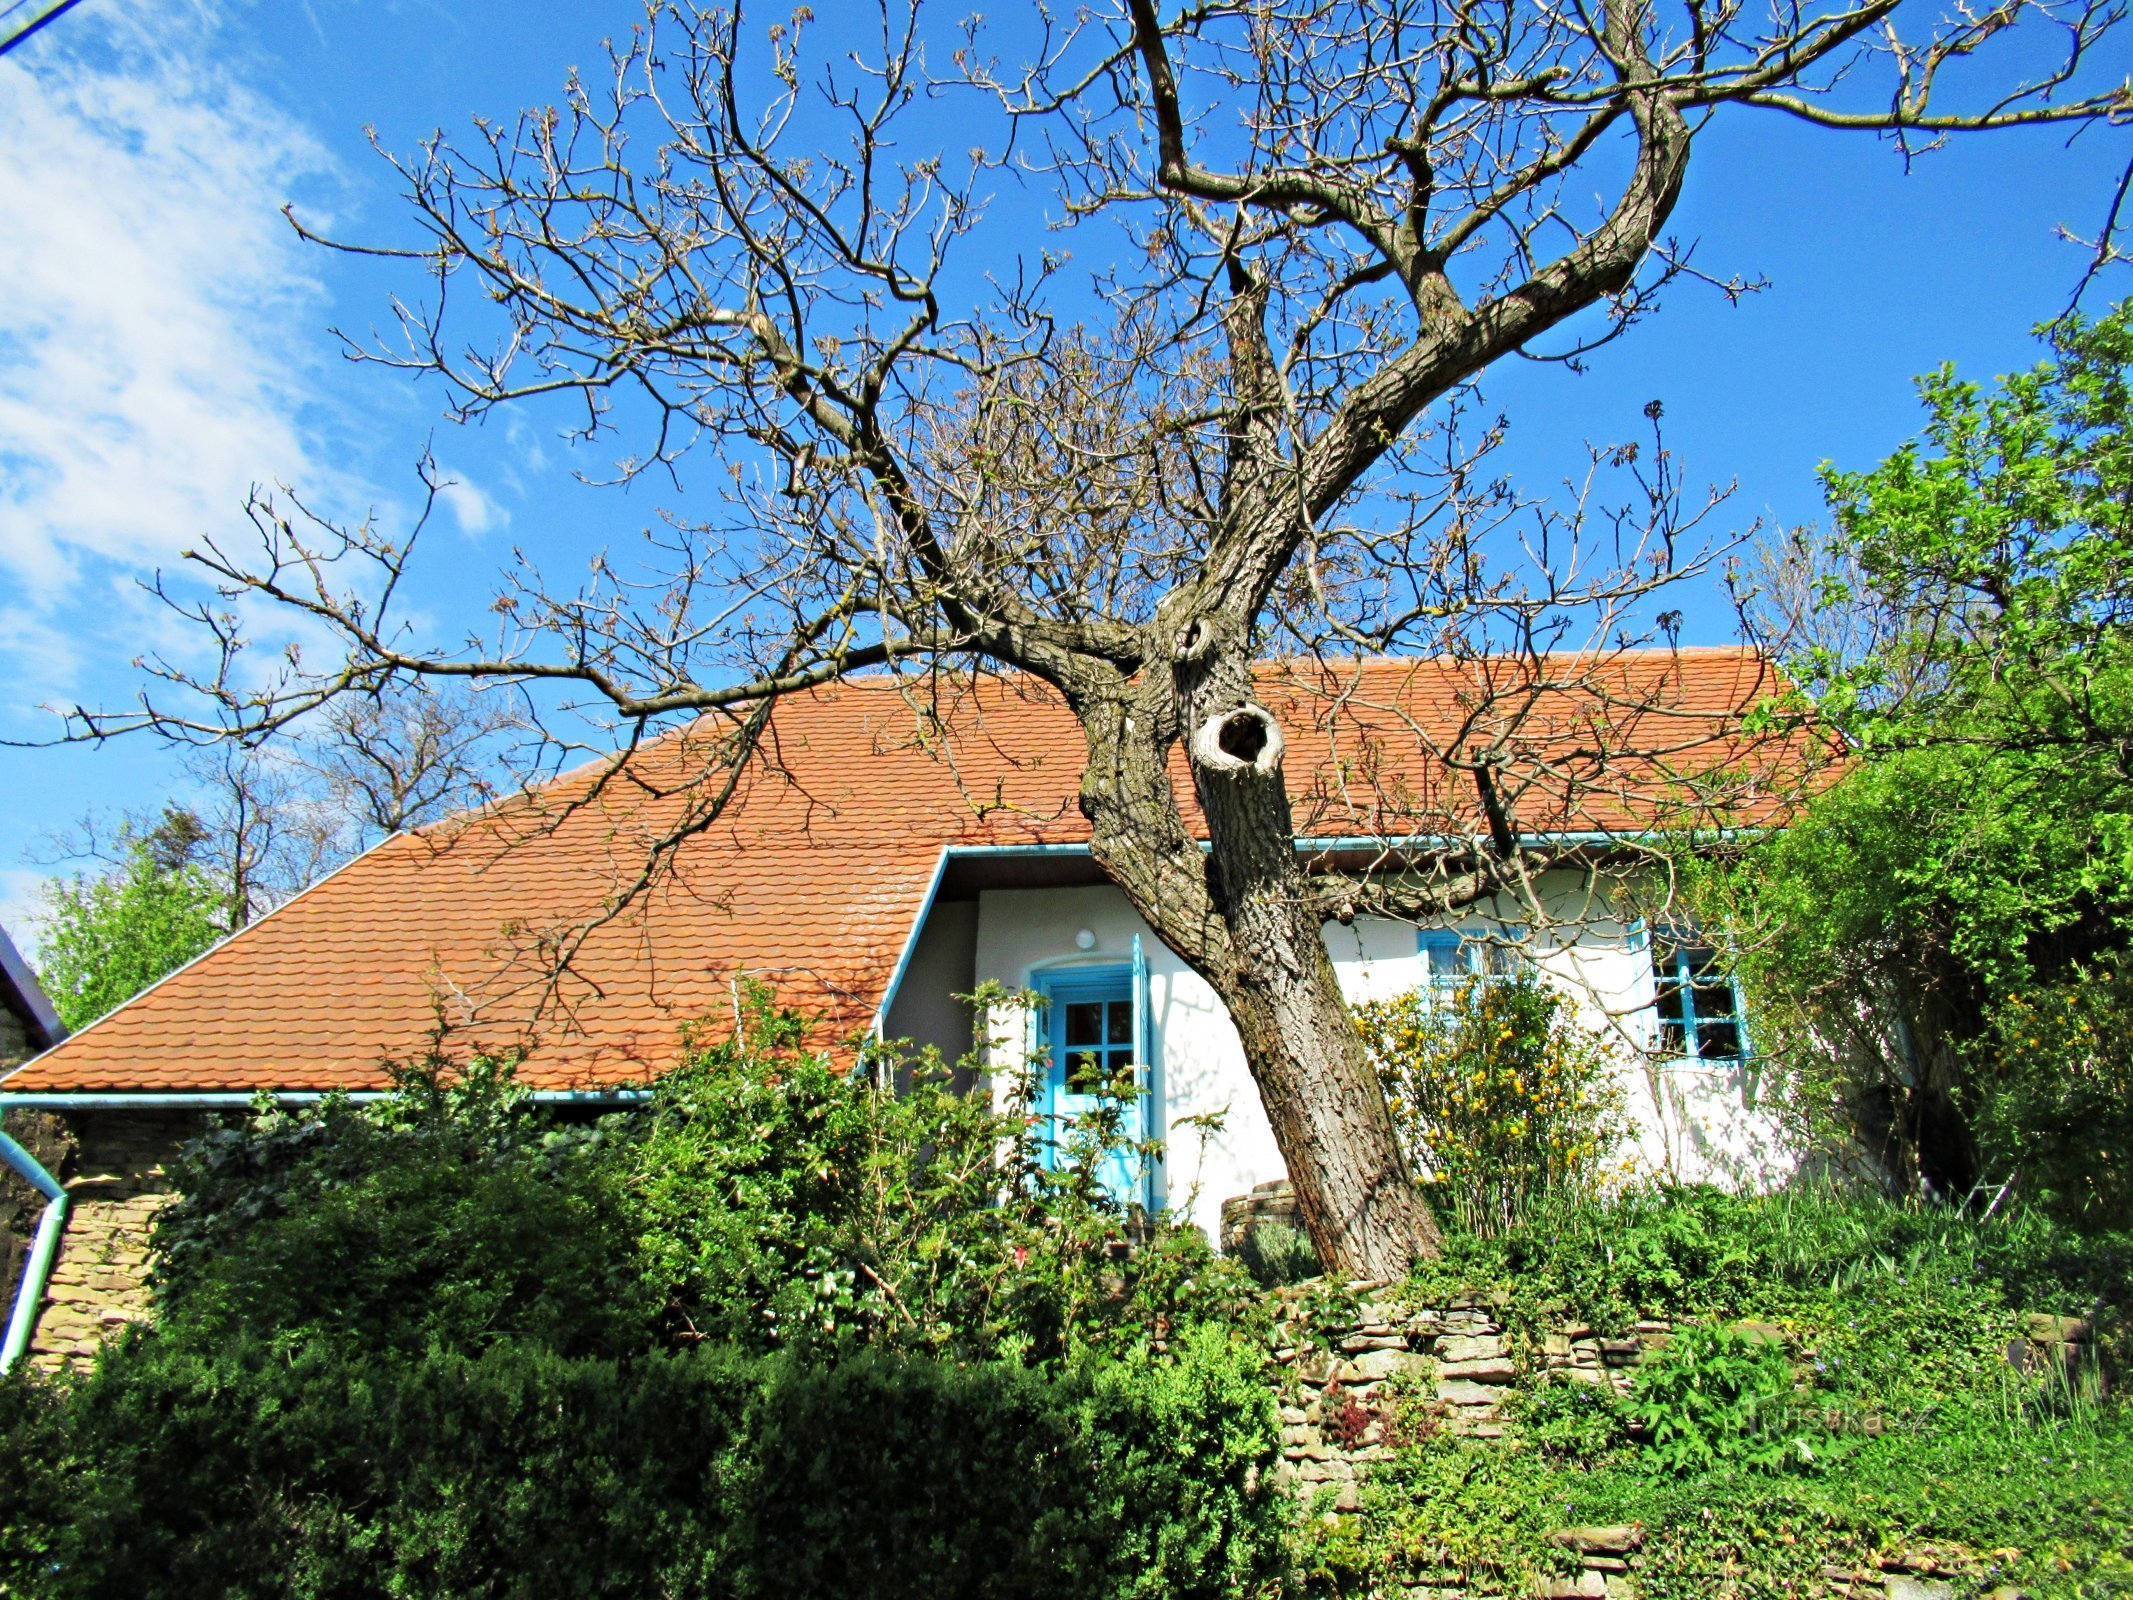 Het dorp Javorník, pittoreske huizen in de omgeving - Kopanky in het dorp Javorník in Slovácko